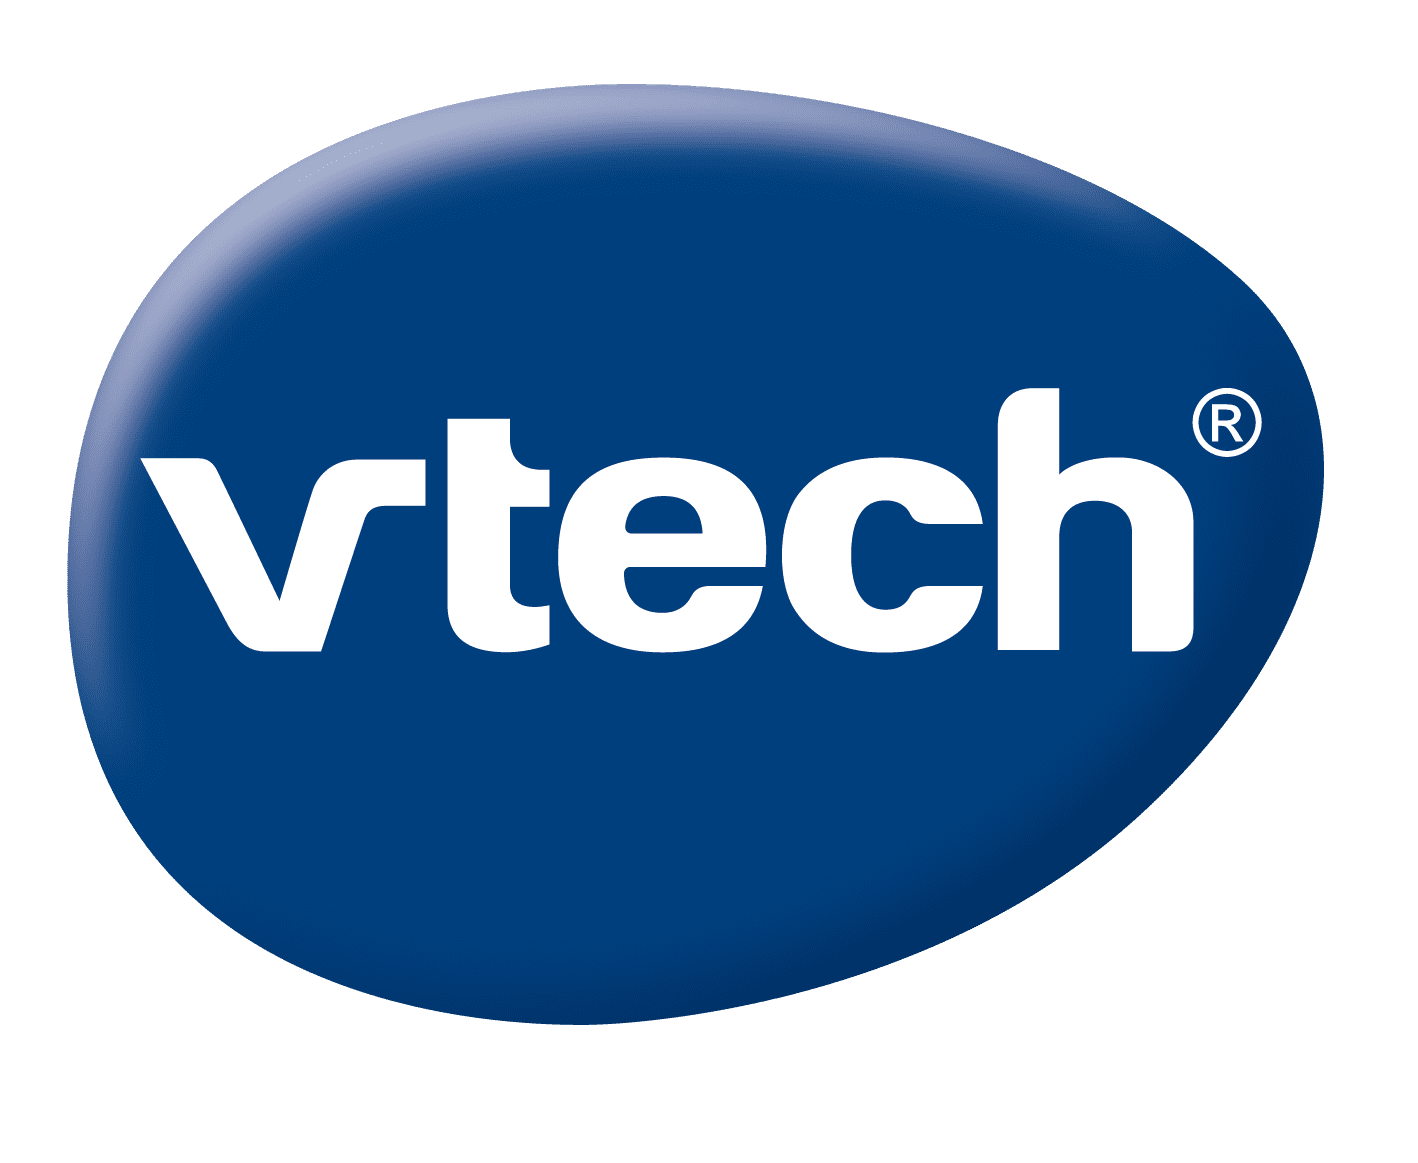 https://1000logos.net/wp-content/uploads/2020/09/VTech-logo.png